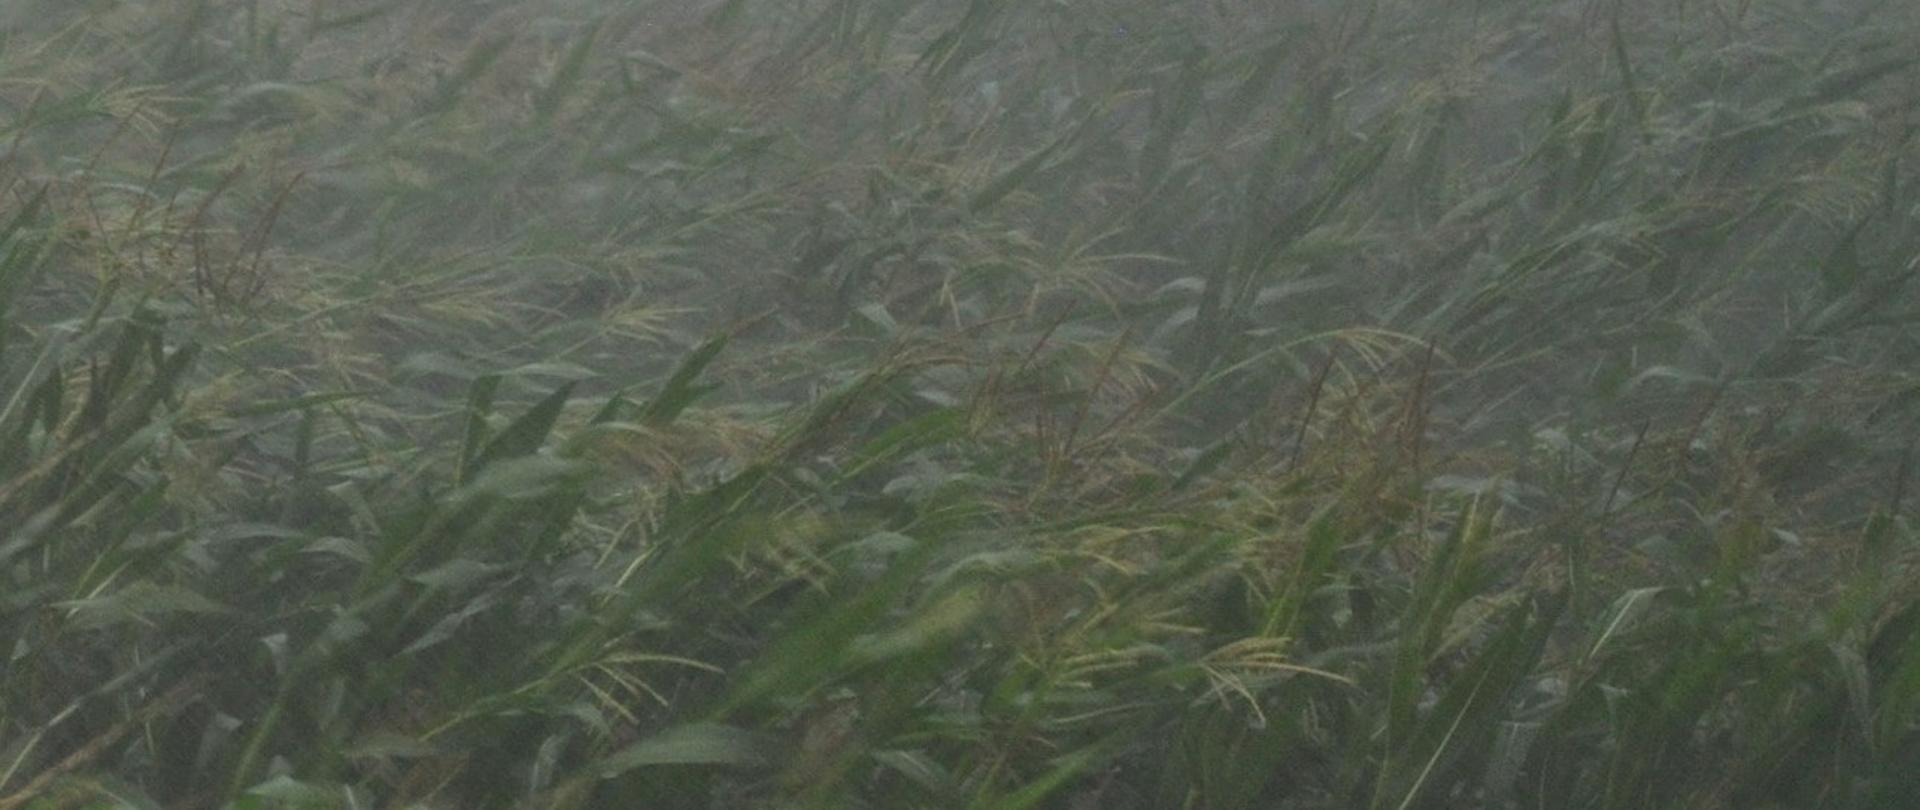 Deszcz nawalny w kukurydzy